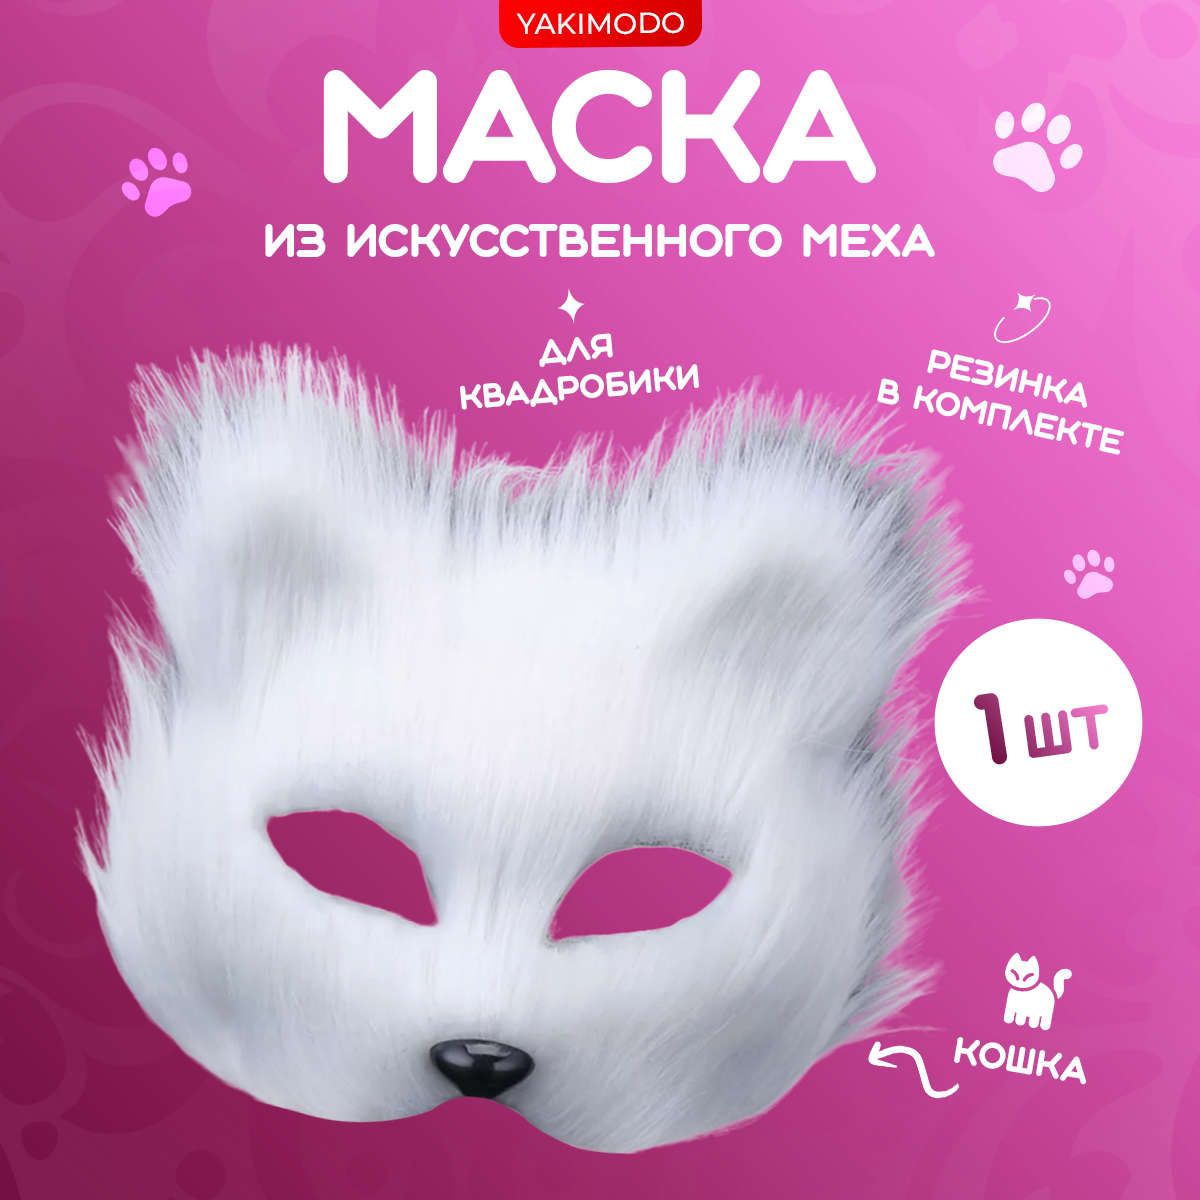 Пушистая меховая маска для квадробики кошка, предназначенная для квд, карнавала, раскрашивания и декорирования